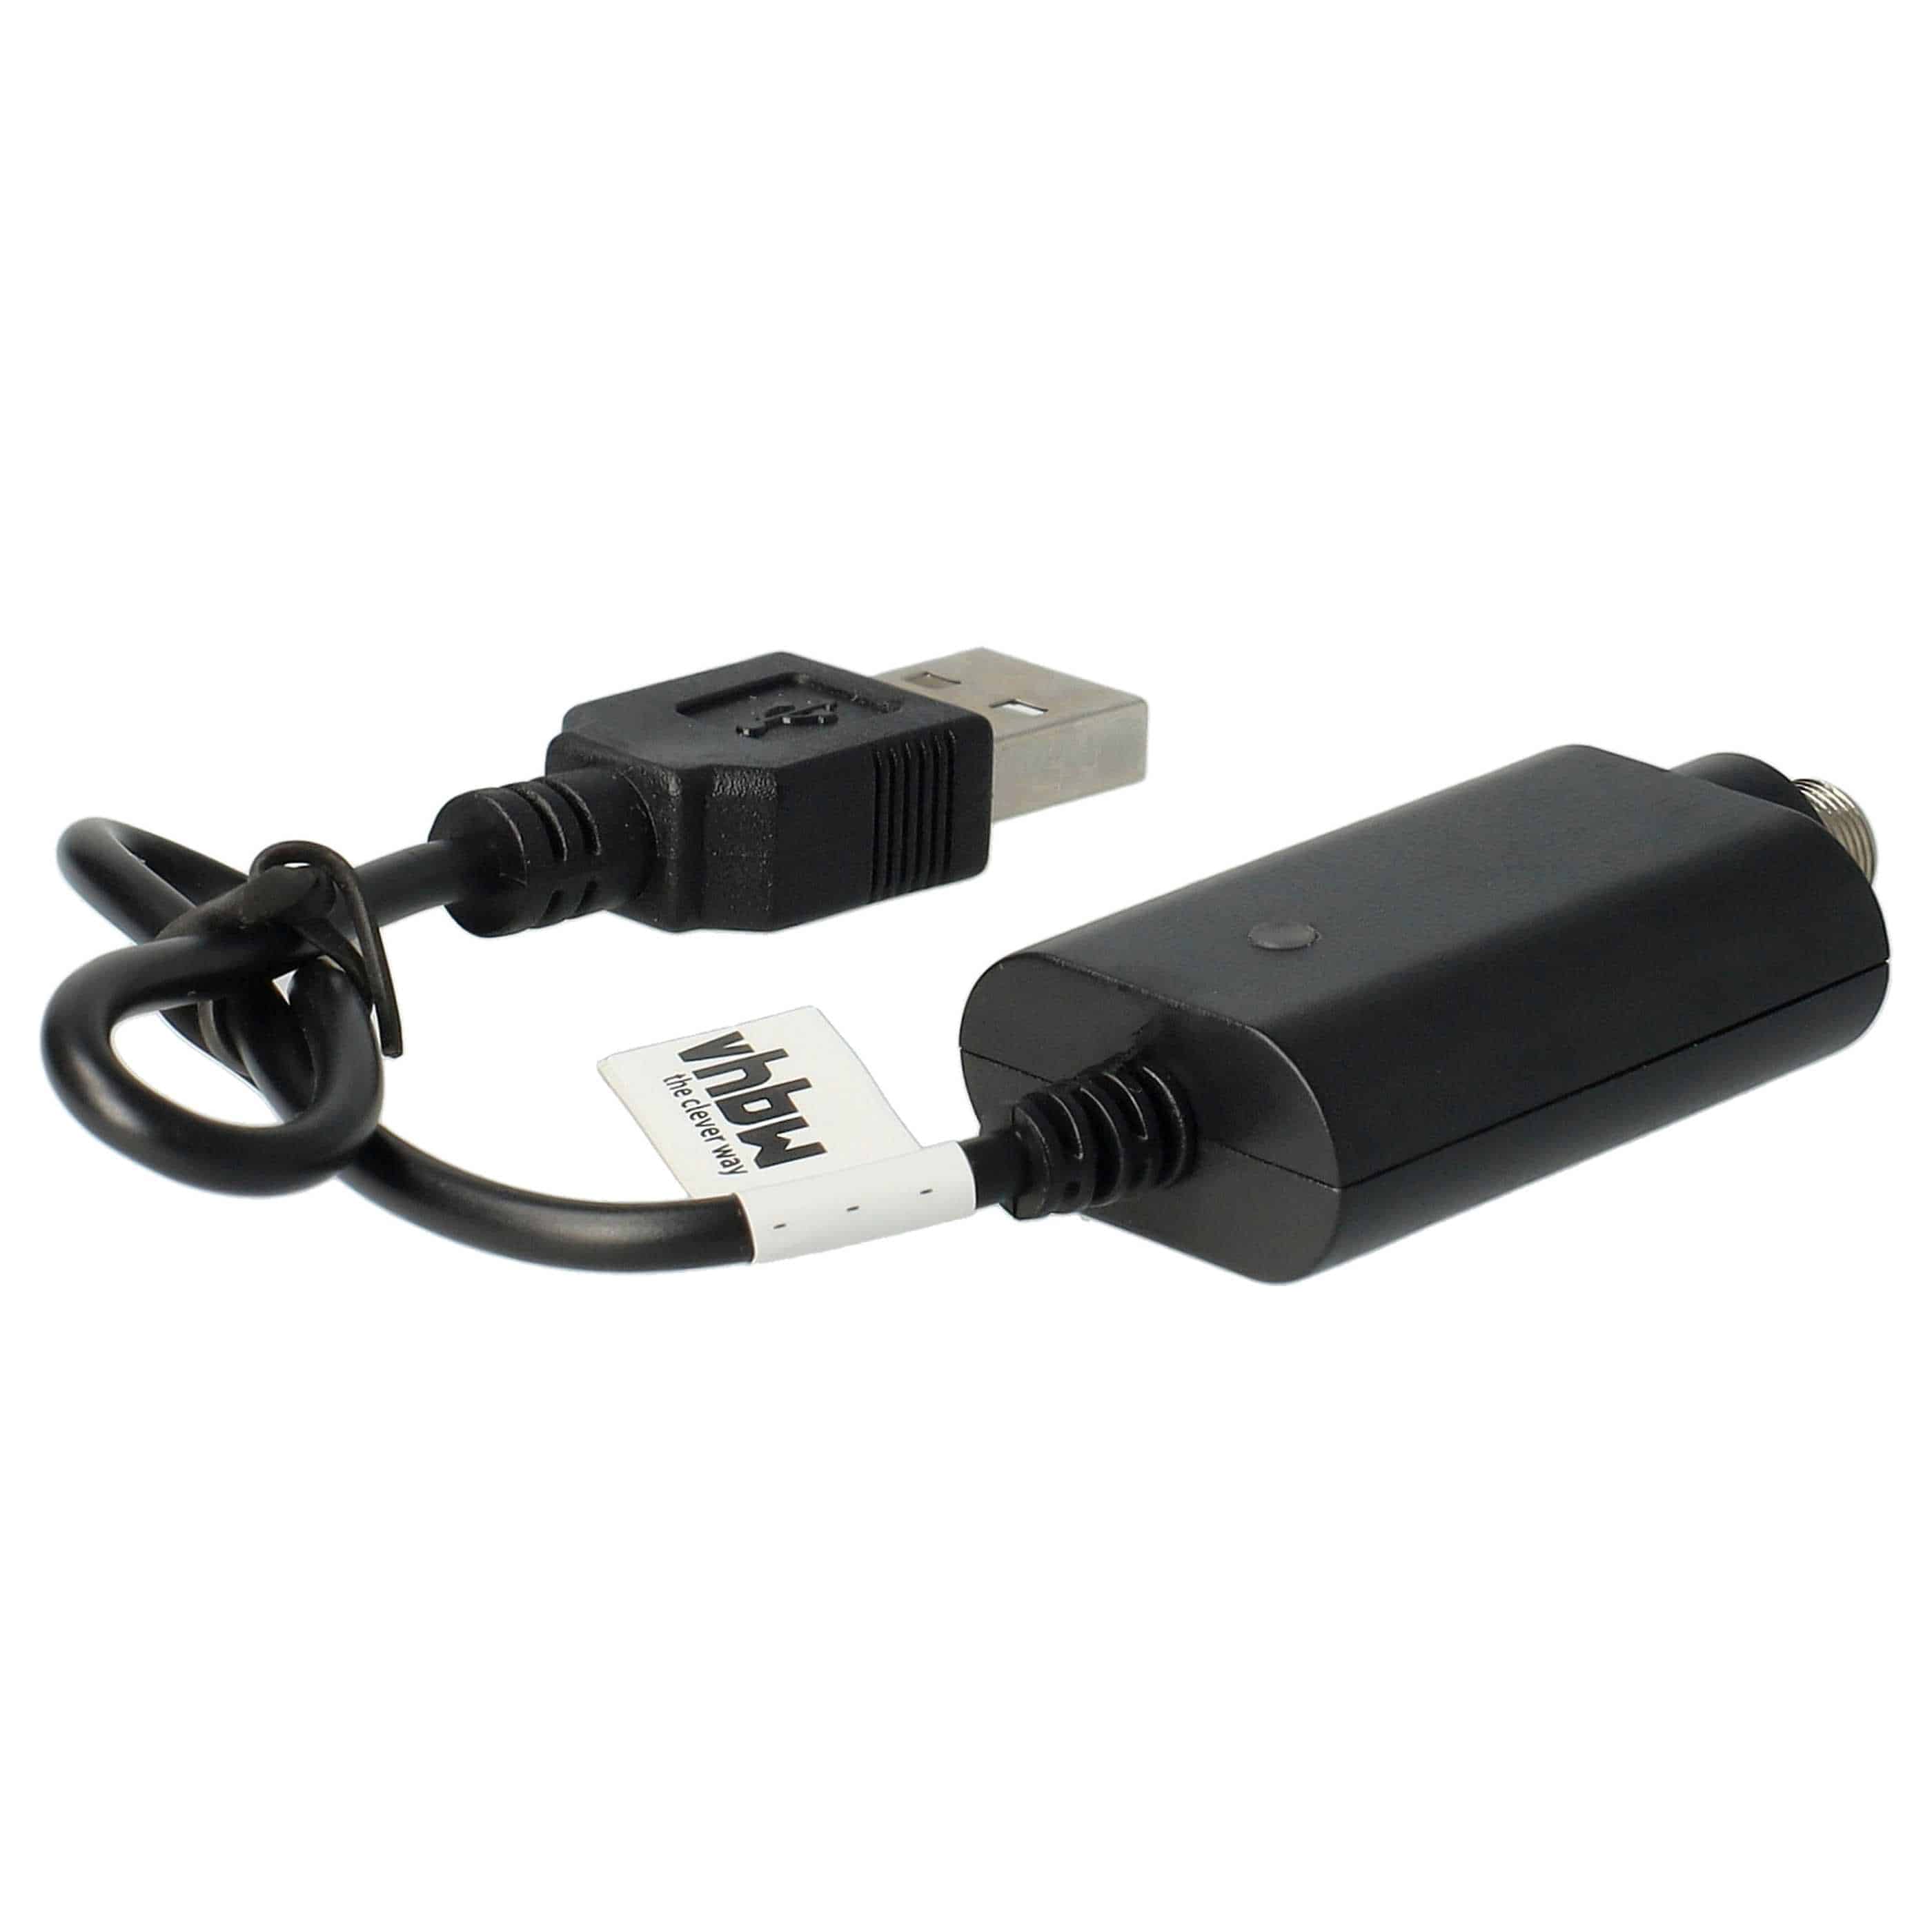 vhbw Chargeur USB cigarettes électroniques, e-chicha avec connecteur